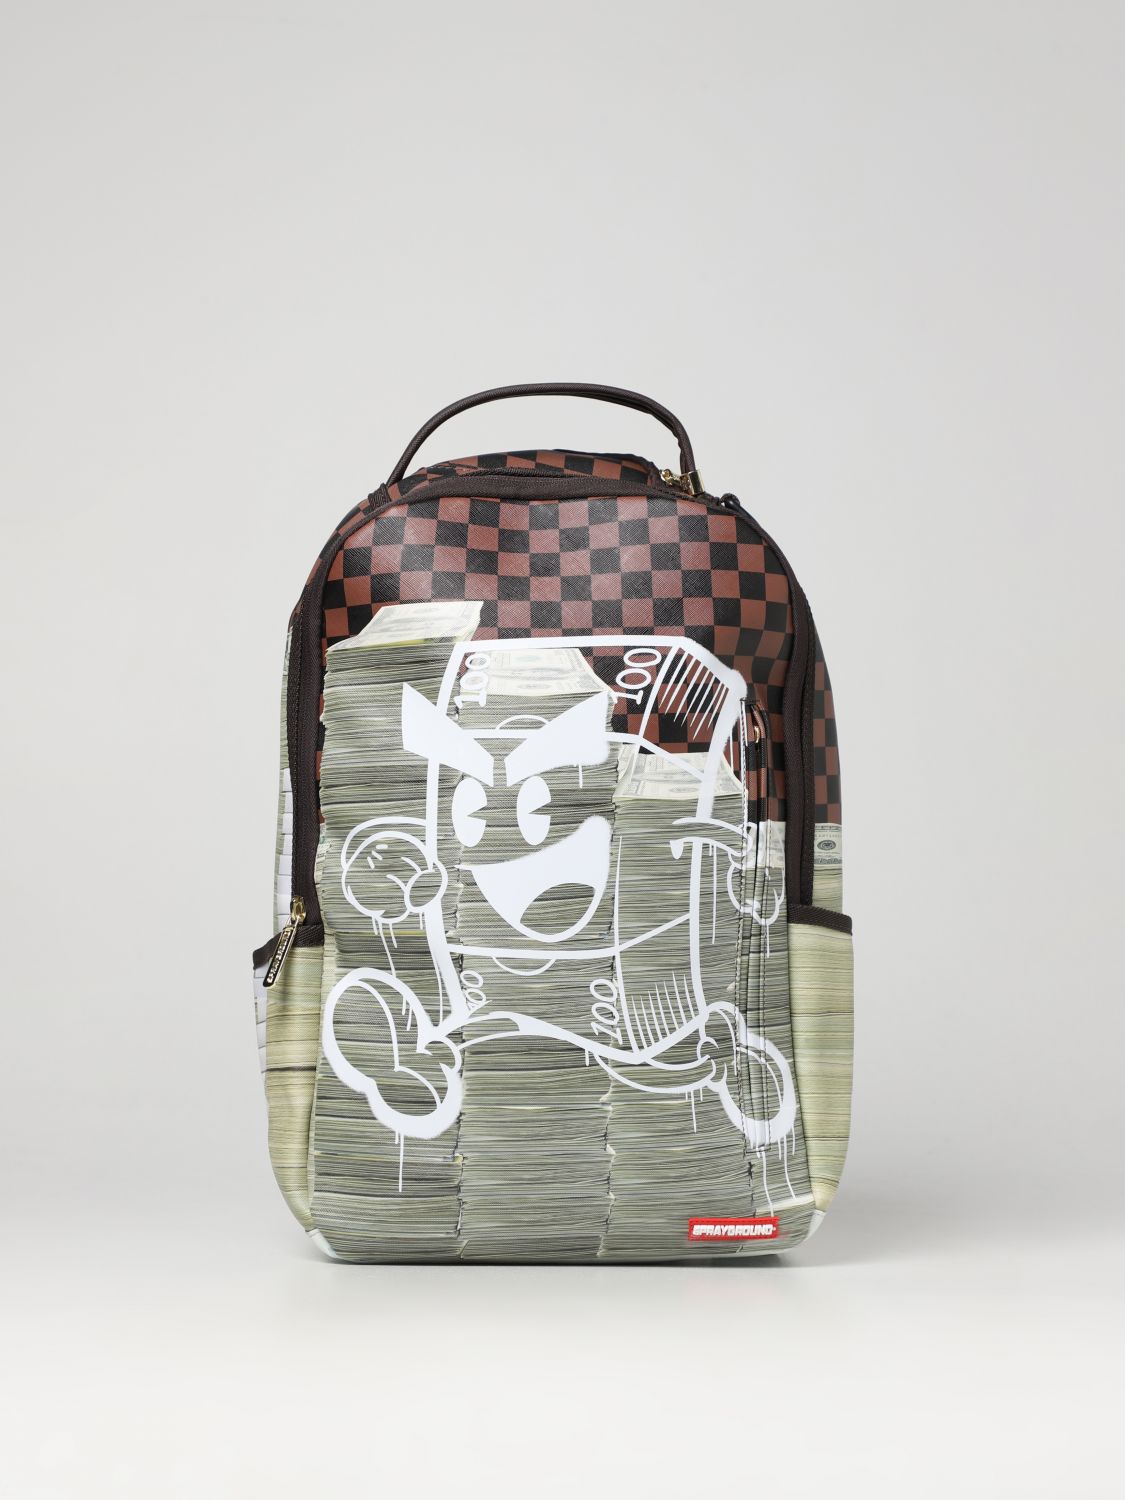 Sprayground Outlet: travel bag for men - Grey